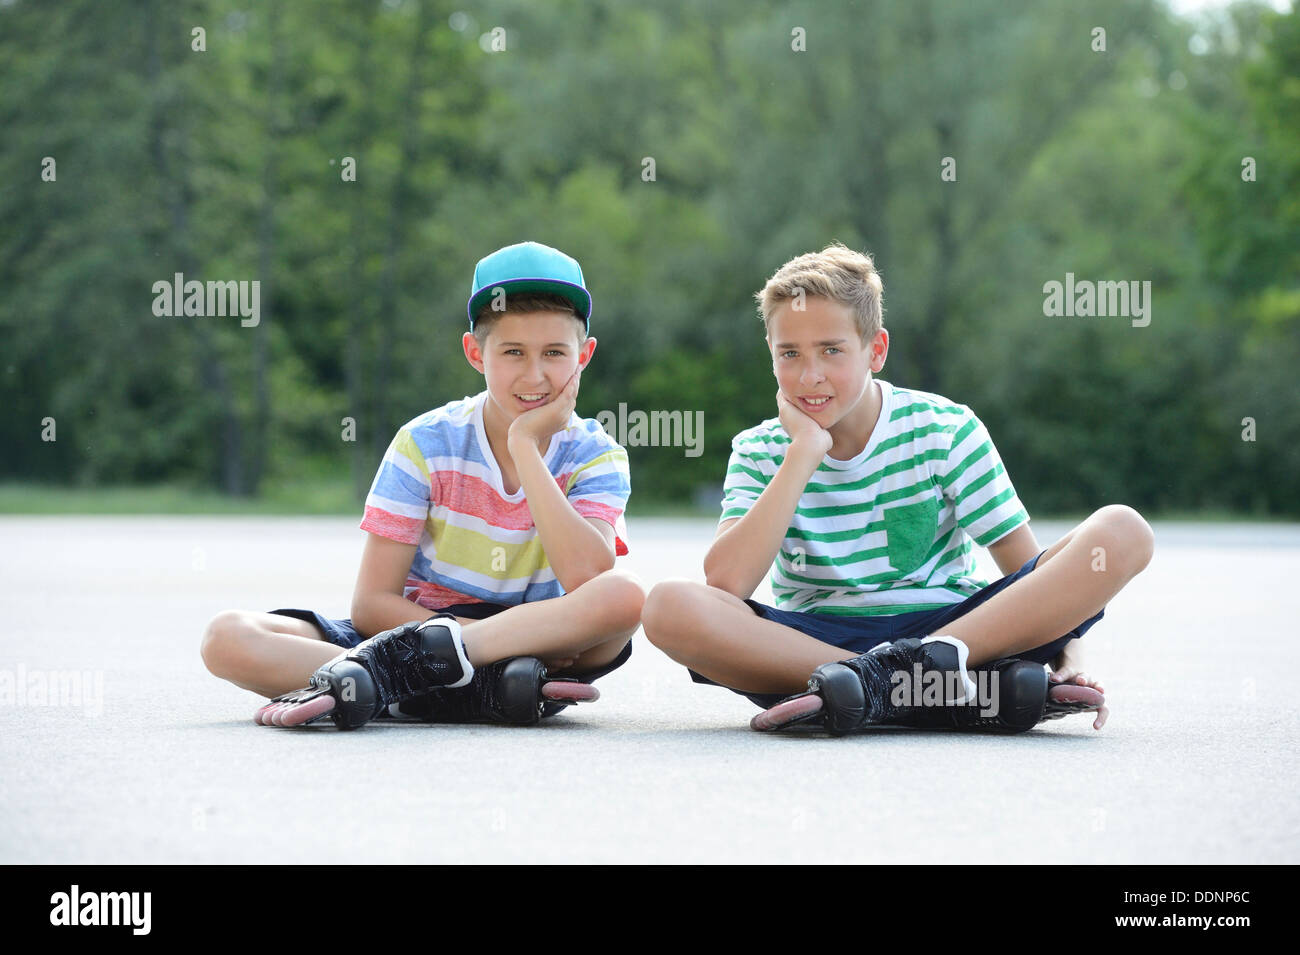 Deux garçons avec des patins à roues alignées sur une place de sport Banque D'Images